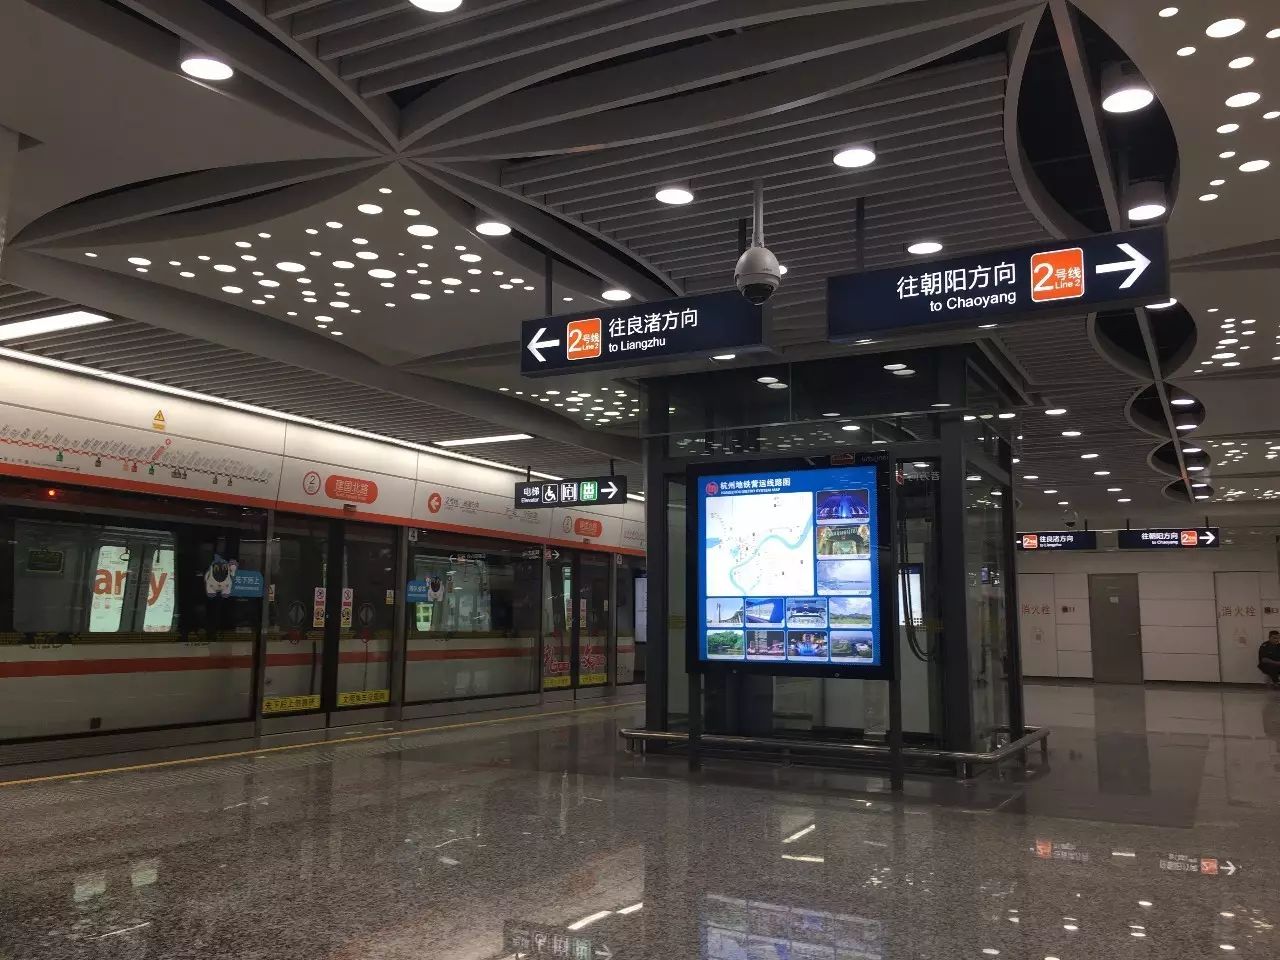 庆春广场站围绕车站区域主题"现代中心"展开空间设计;建国北路站依托